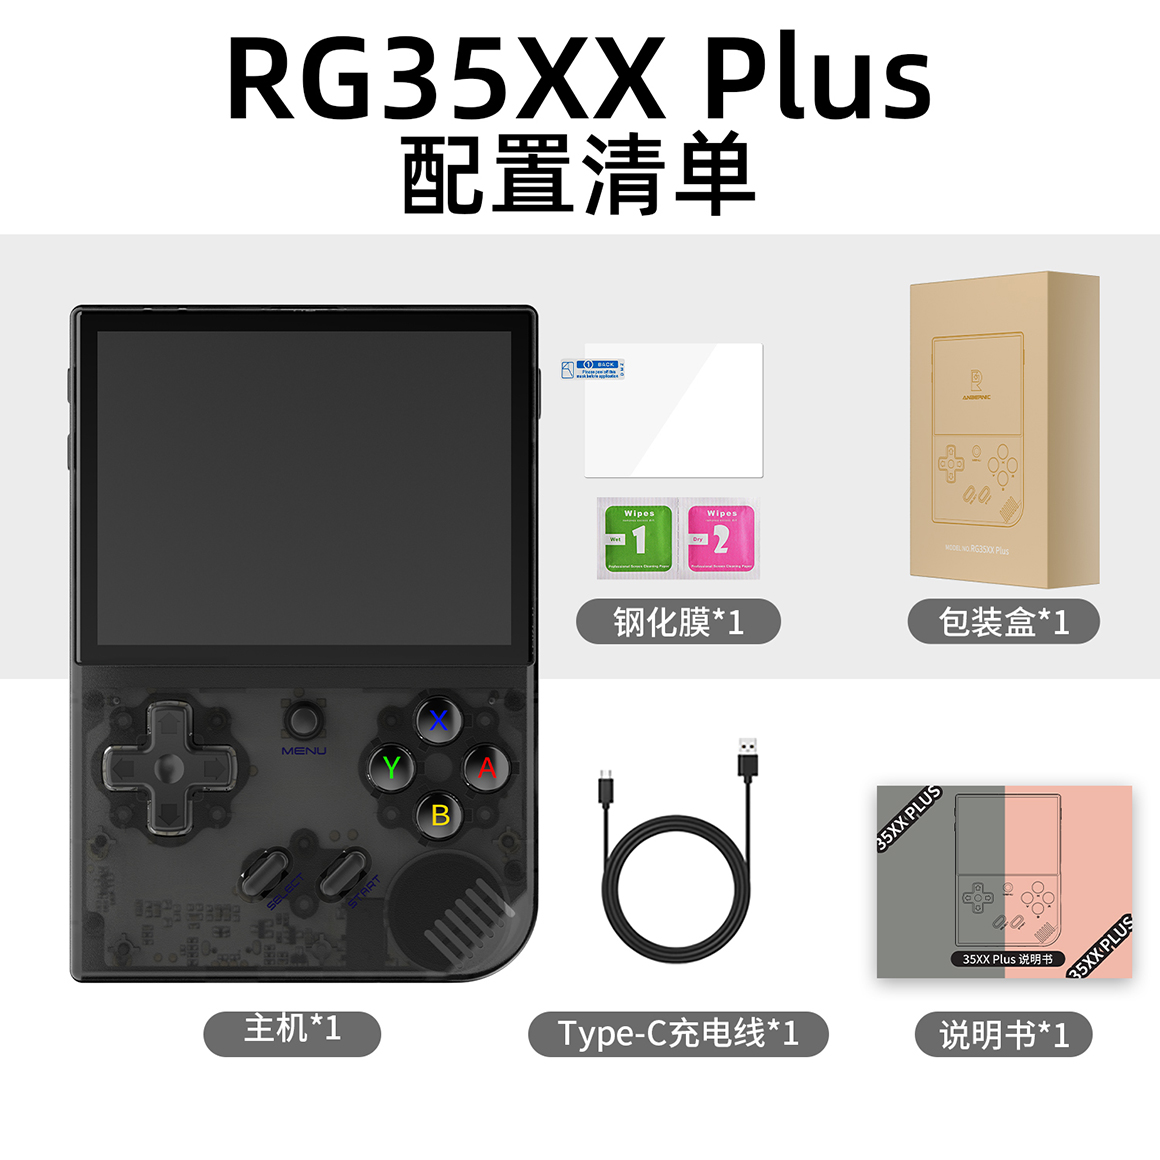 RG 35XX Plus(图11)